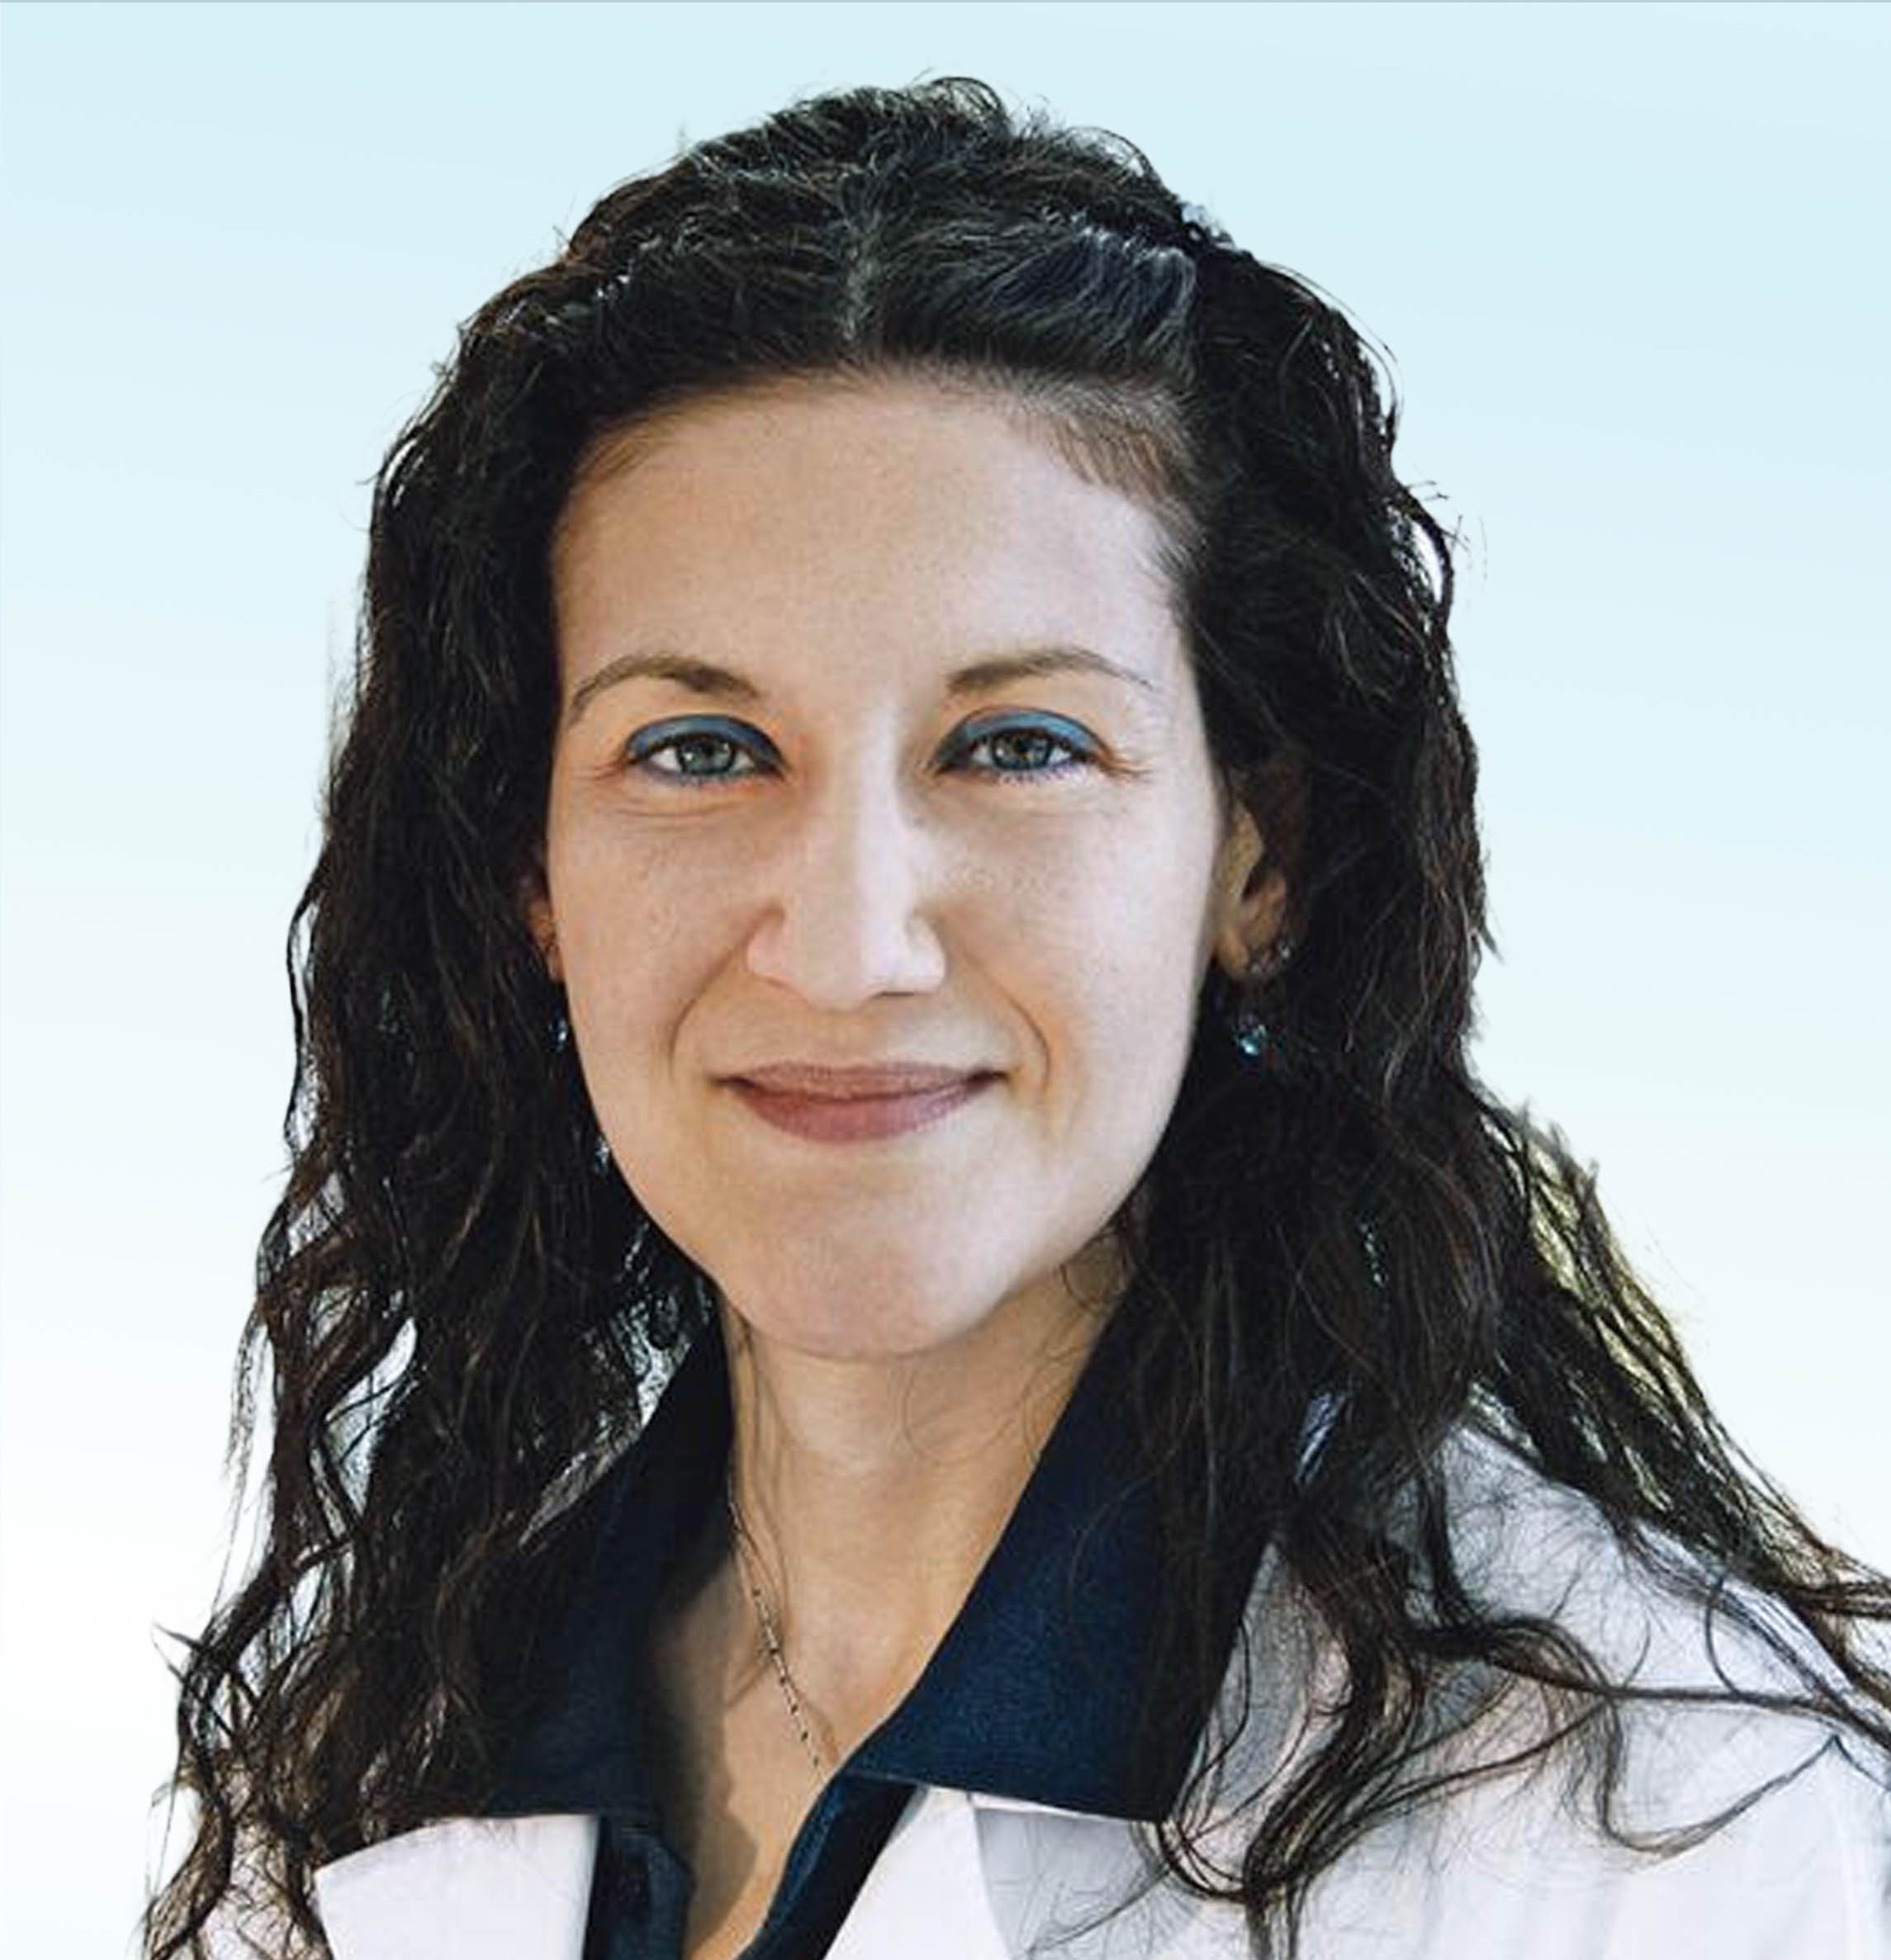 Dermatologue, Dr. med. Vassiliki Bekou